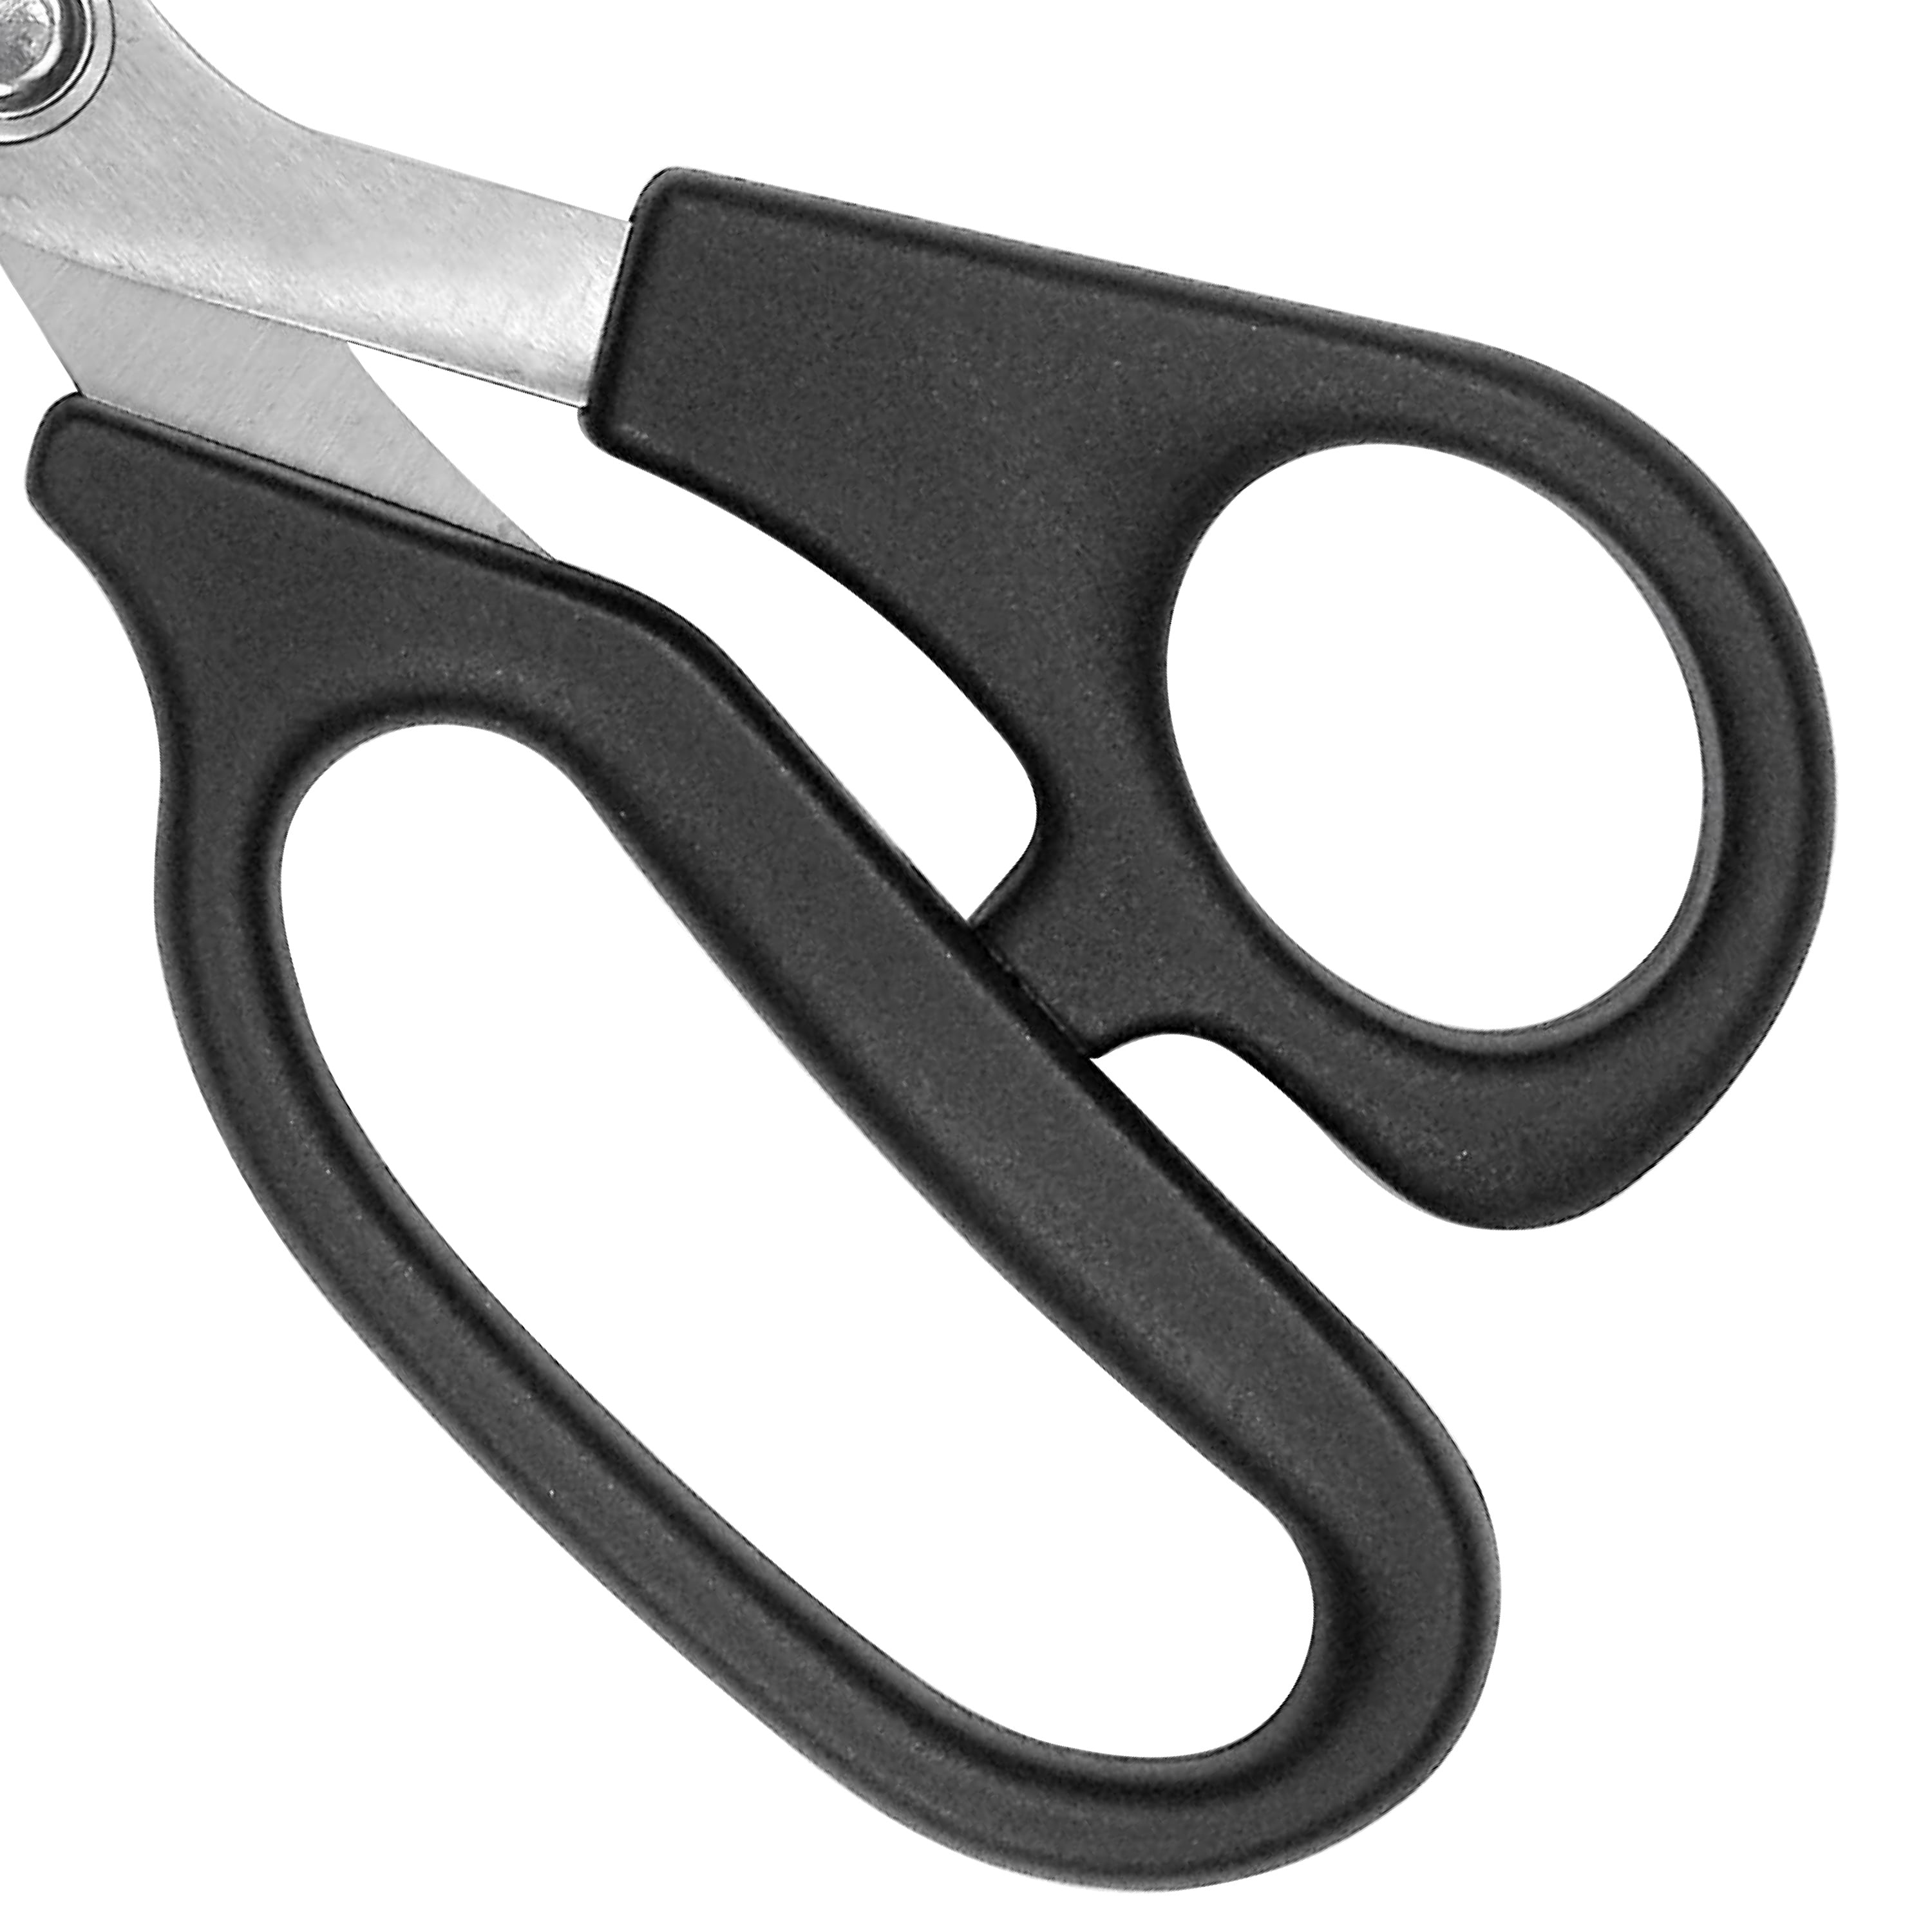 Westcott® All Purpose Value Scissors, Black, 8